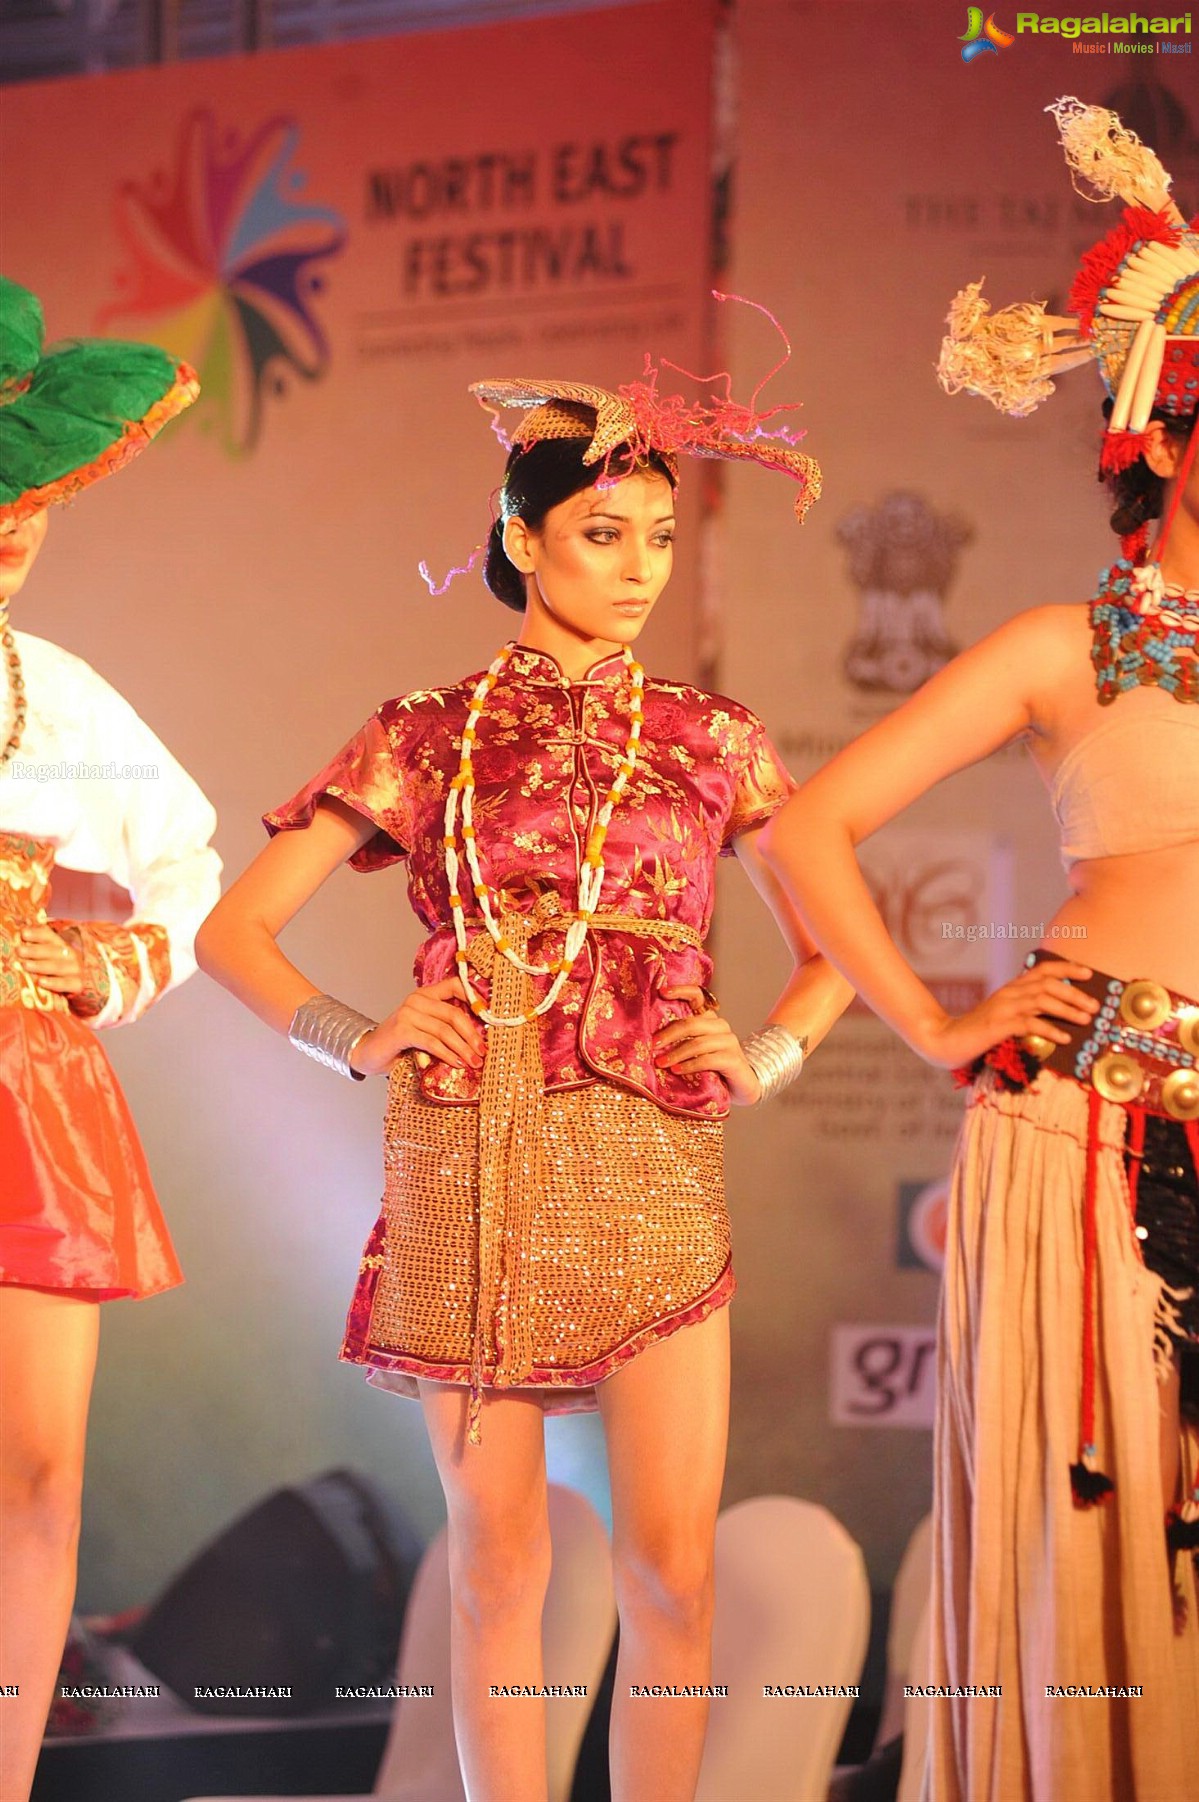 North East India Film Festival 2014, Mumbai